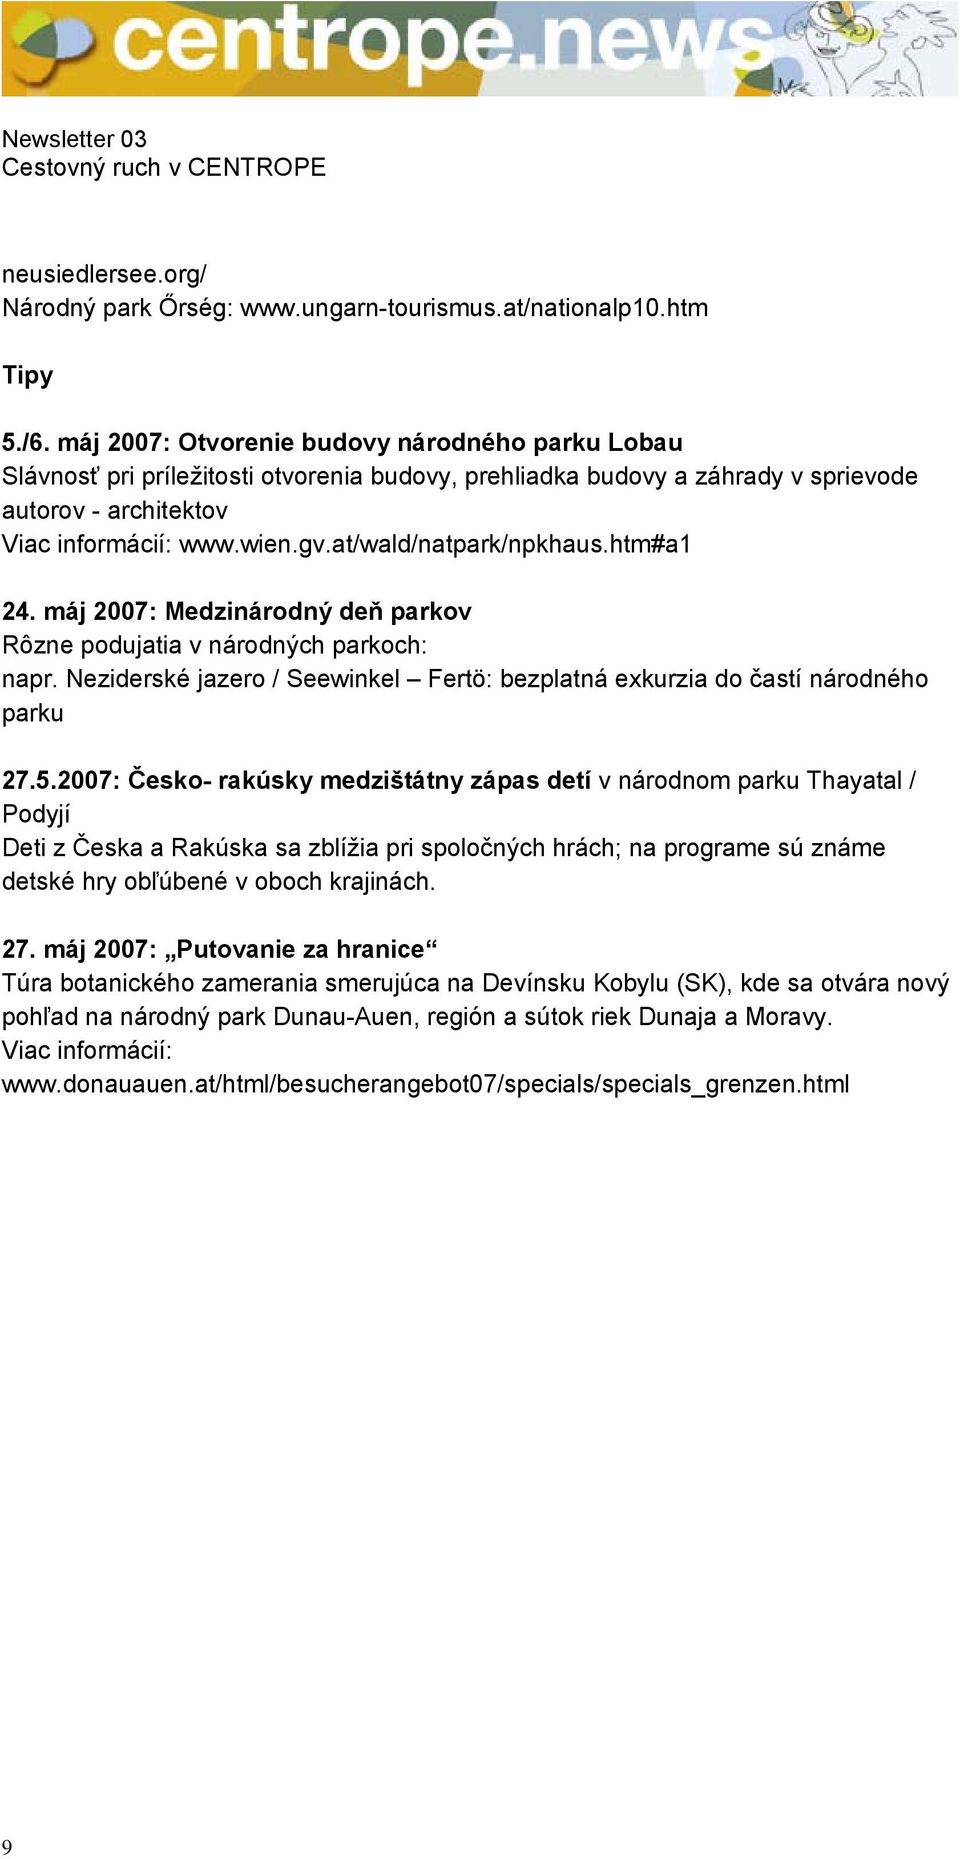 at/wald/natpark/npkhaus.htm#a1 24. máj 2007: Medzinárodný deň parkov Rôzne podujatia v národných parkoch: napr. Neziderské jazero / Seewinkel Fertö: bezplatná exkurzia do častí národného parku 27.5.